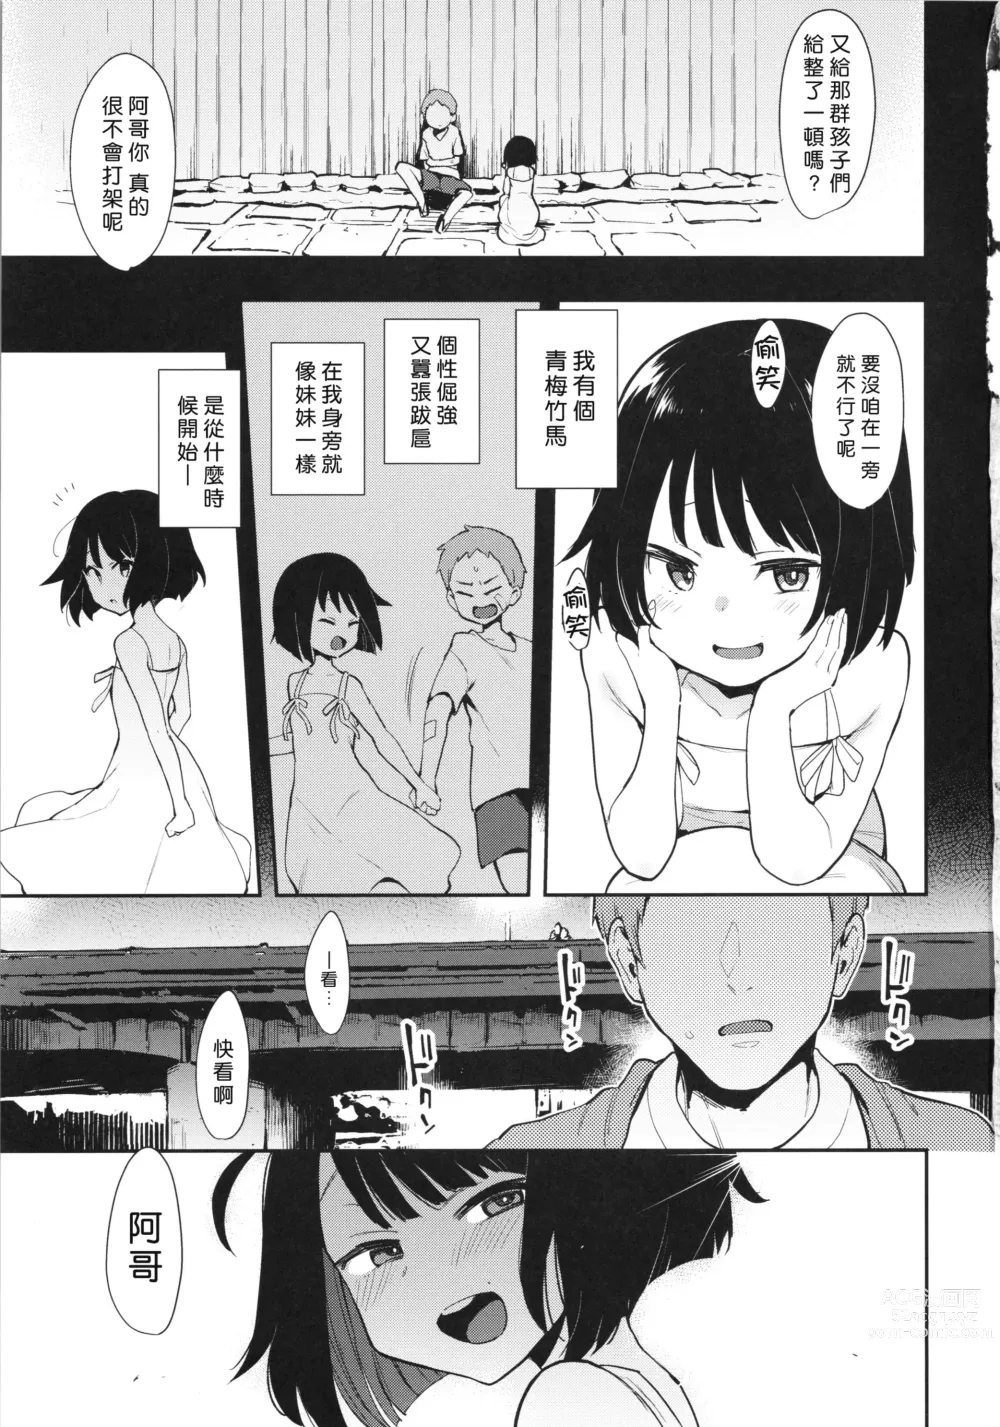 Page 2 of doujinshi Chouko I-V